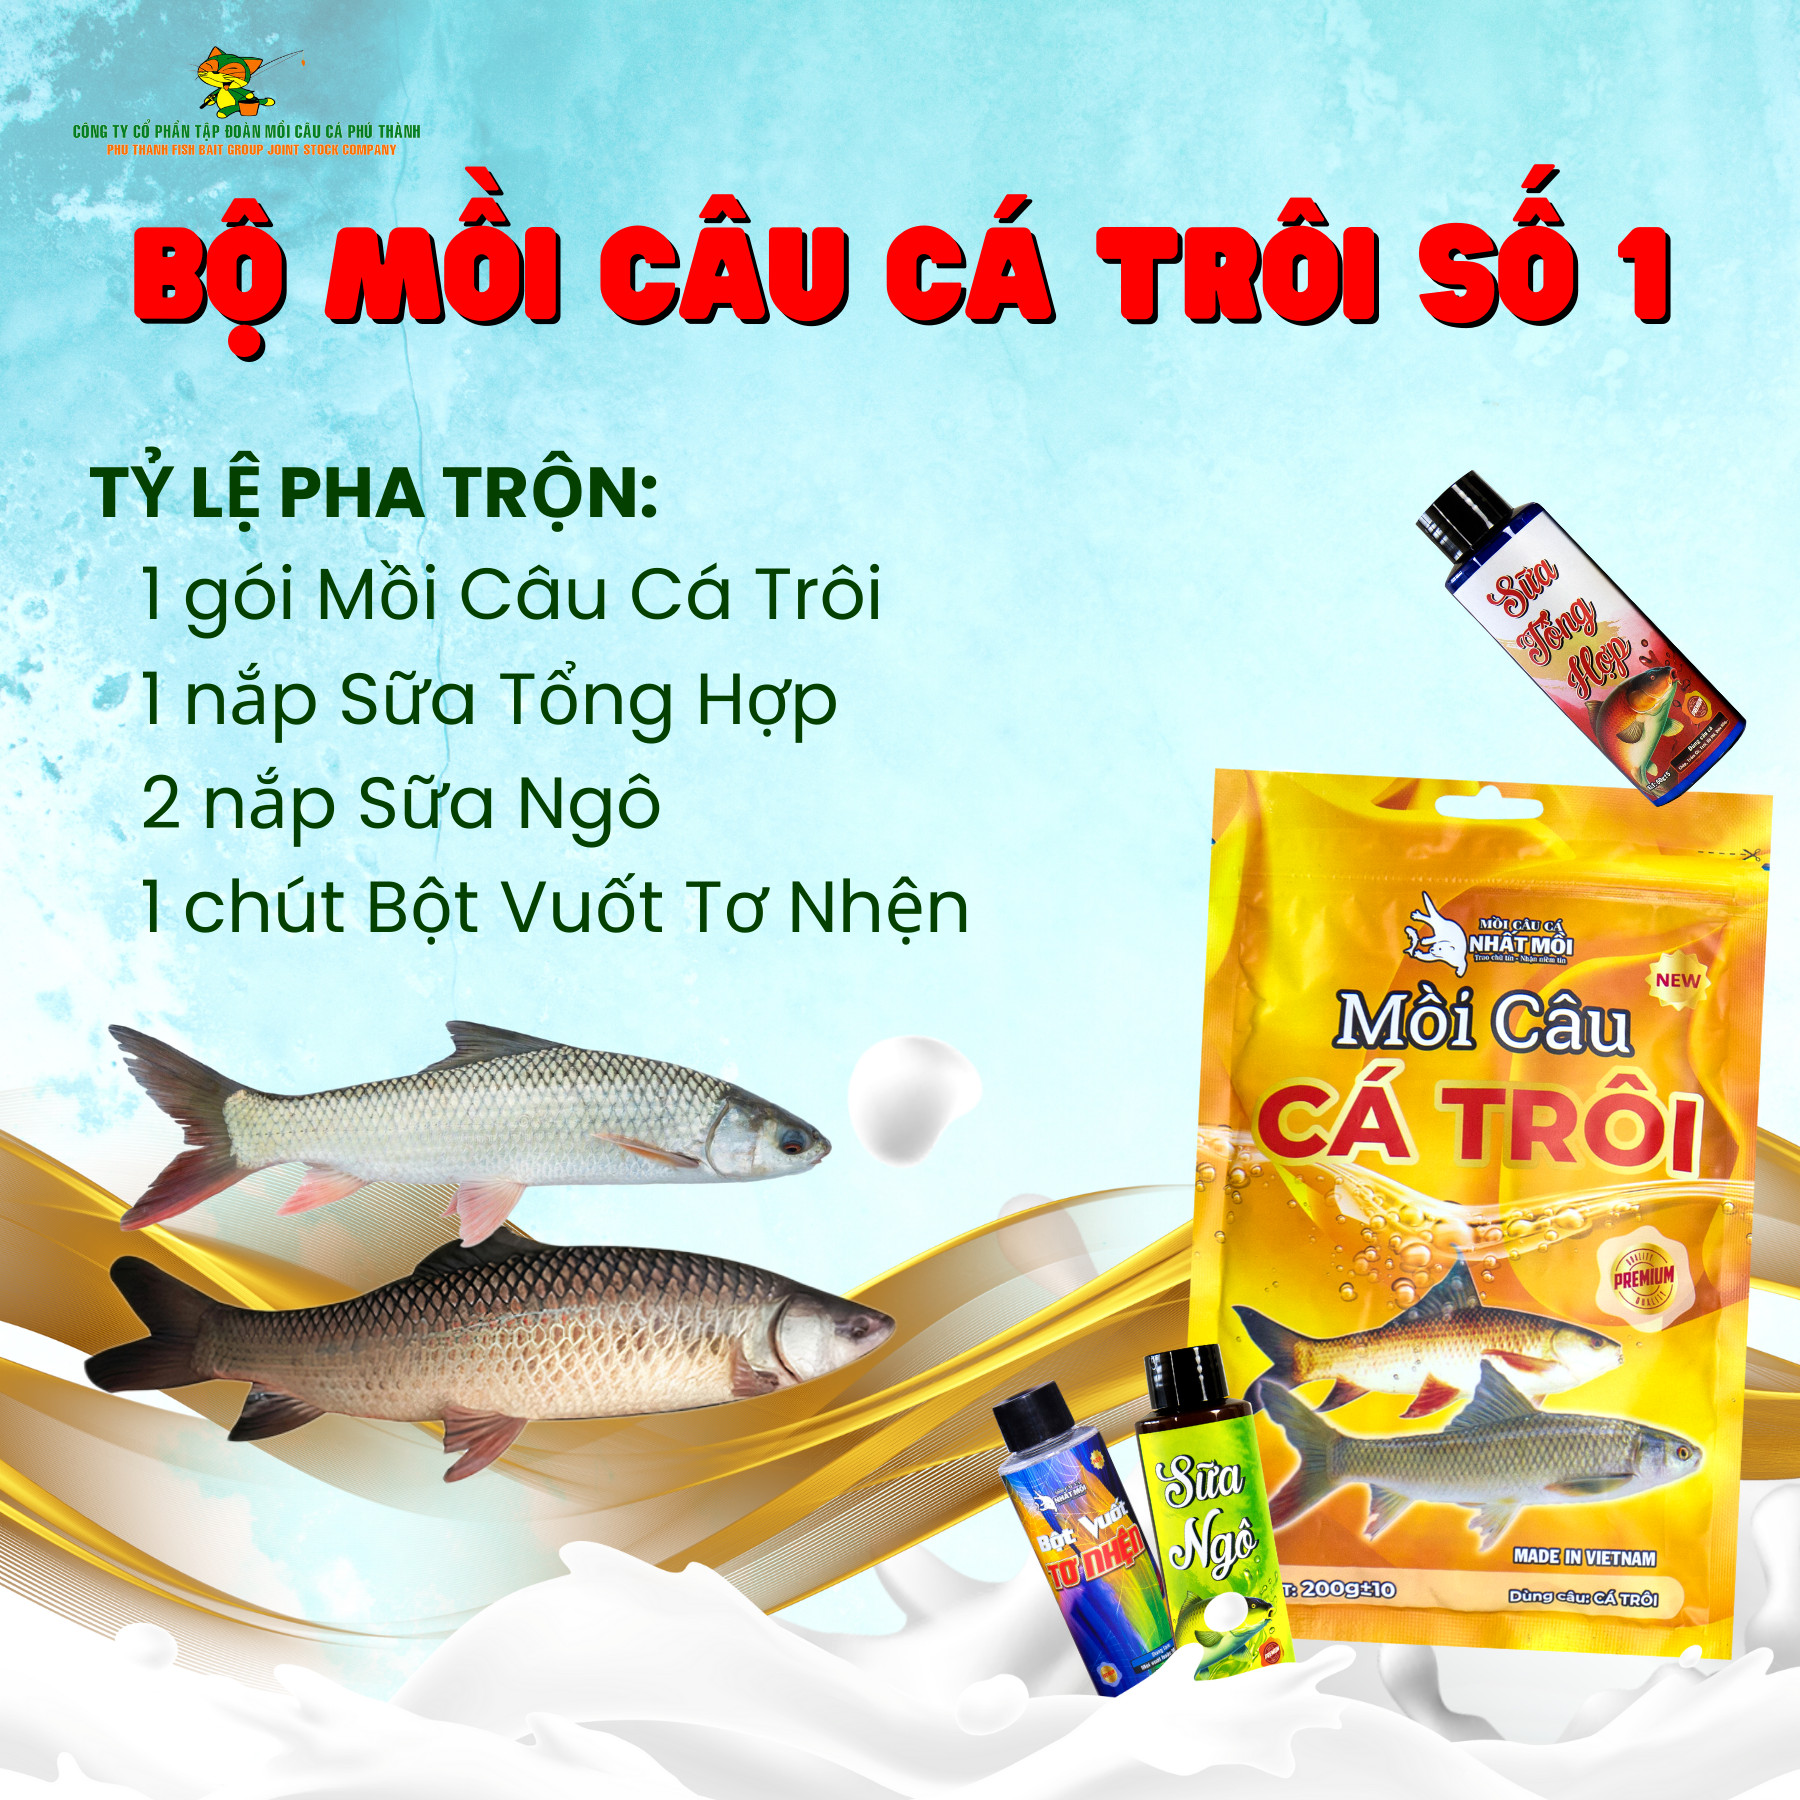 Bộ mồi cá Trôi số 1 - Hãng mồi câu cá Phú Thành